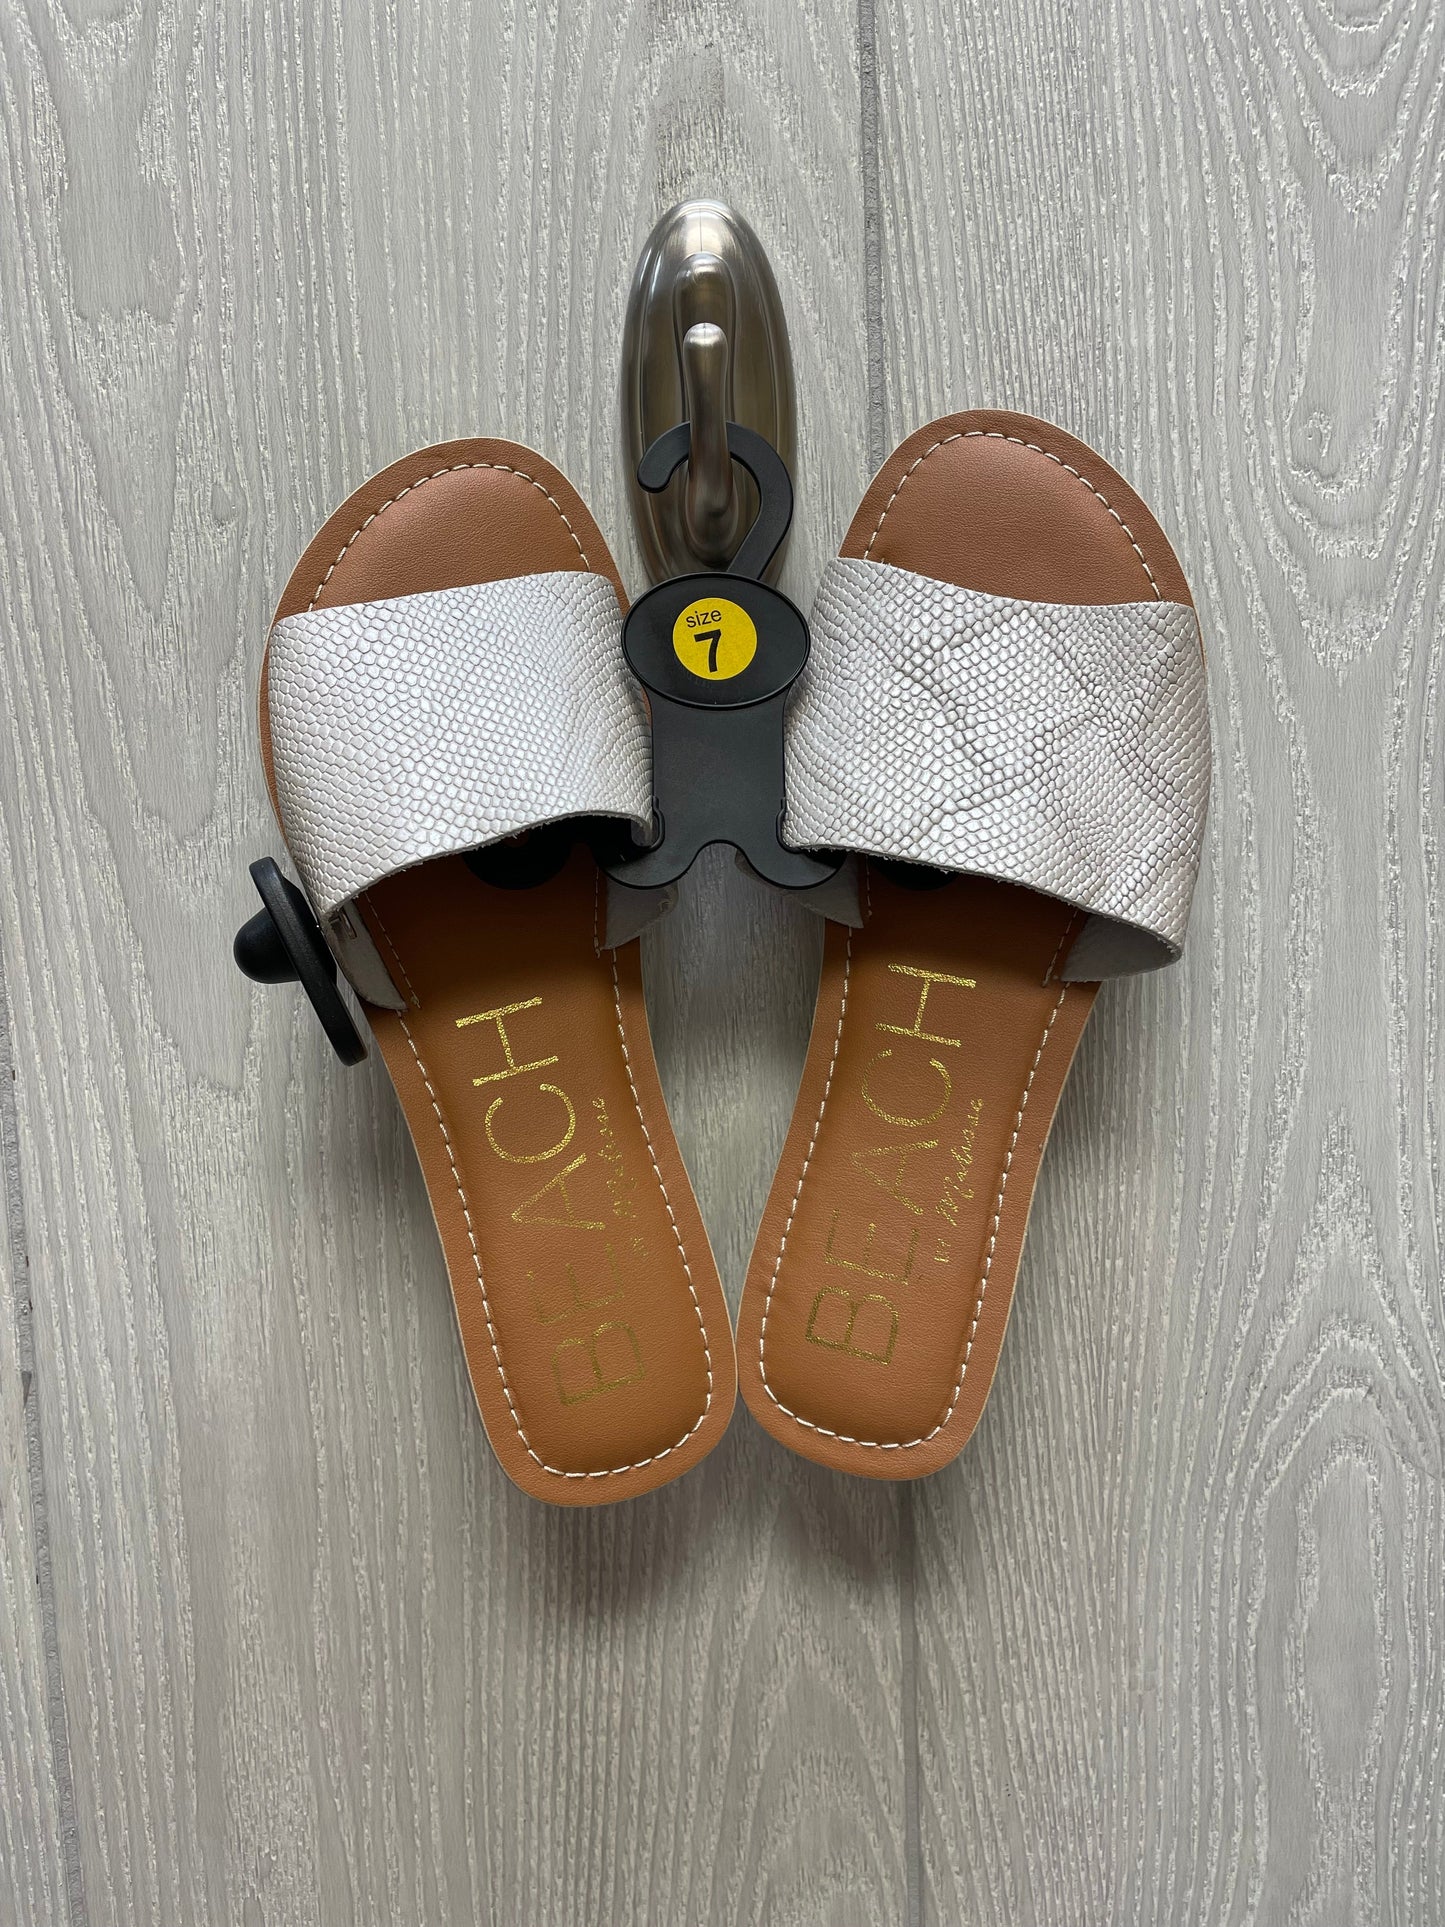 Grey & Tan Sandals Flats Matisse, Size 7